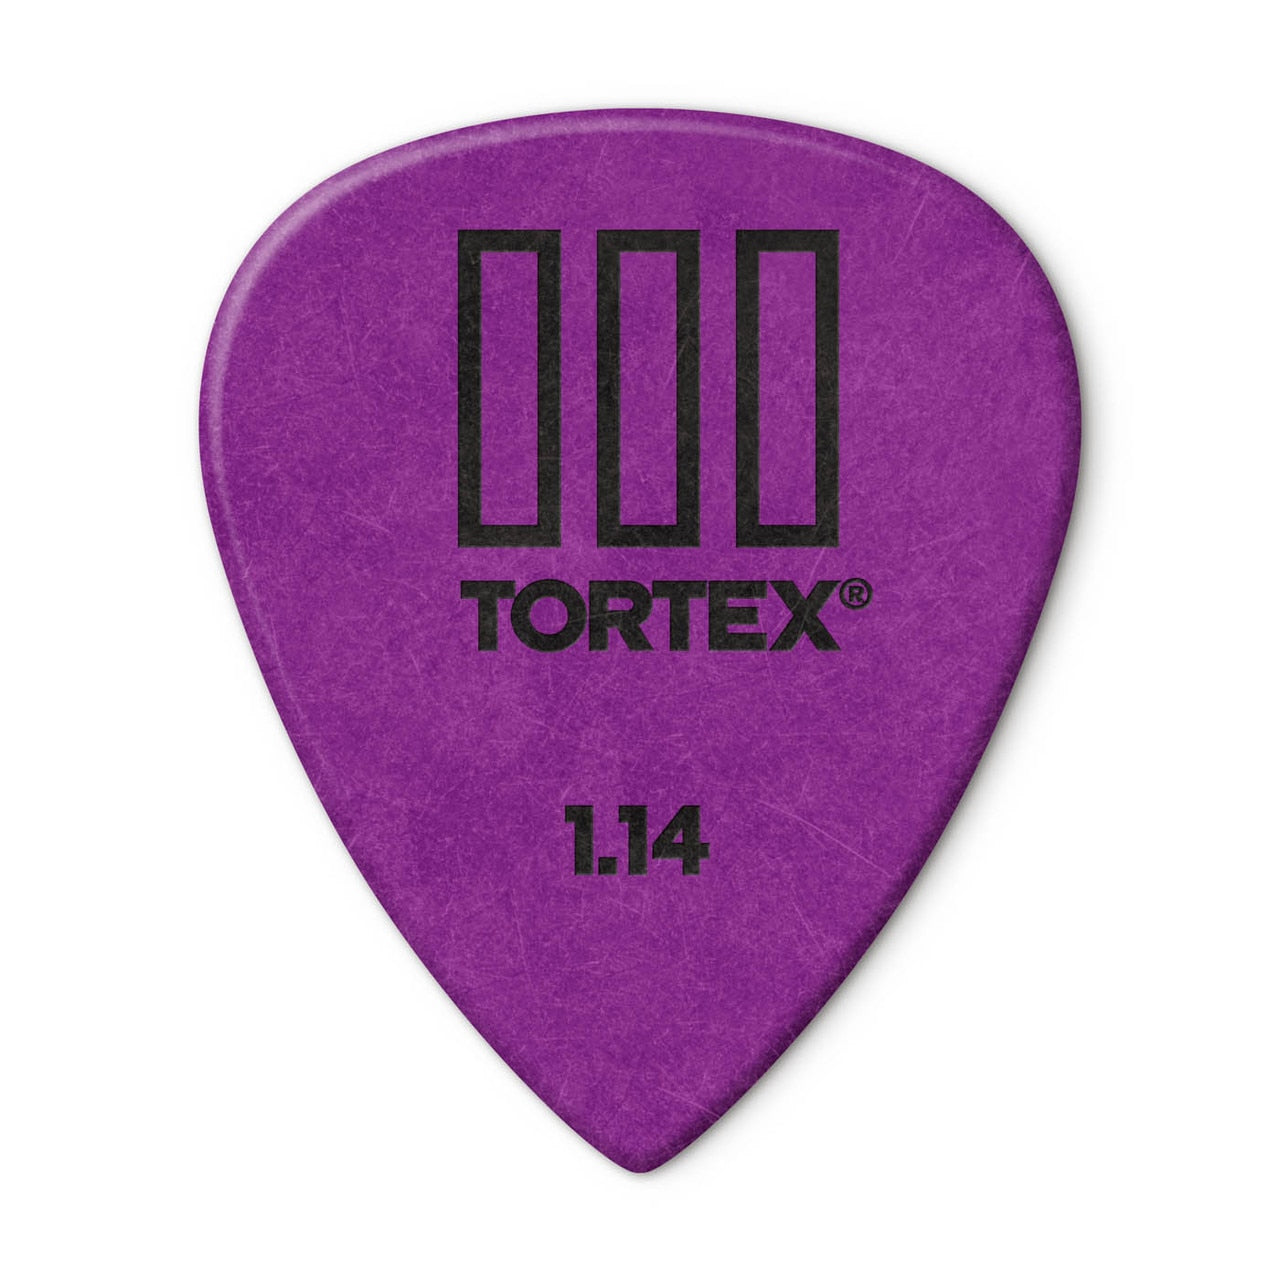 Dunlop Tortex III Picks, 12-Pack, 1.14mm